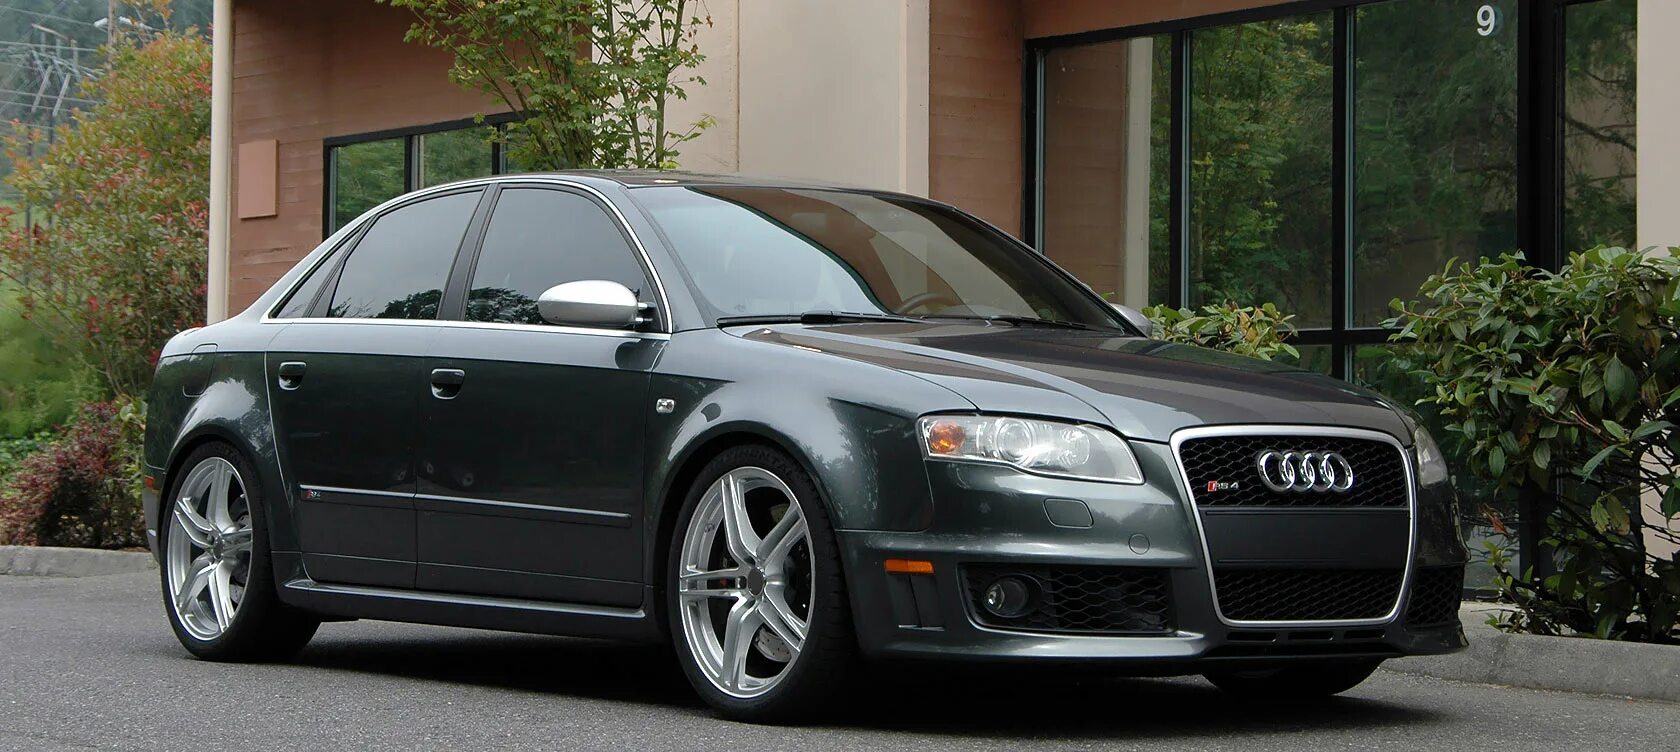 Б 7.4. Audi a4 b7. Audi rs4 b6. Audi a4 b7 черные диски. Audi s4 b7 Grey.